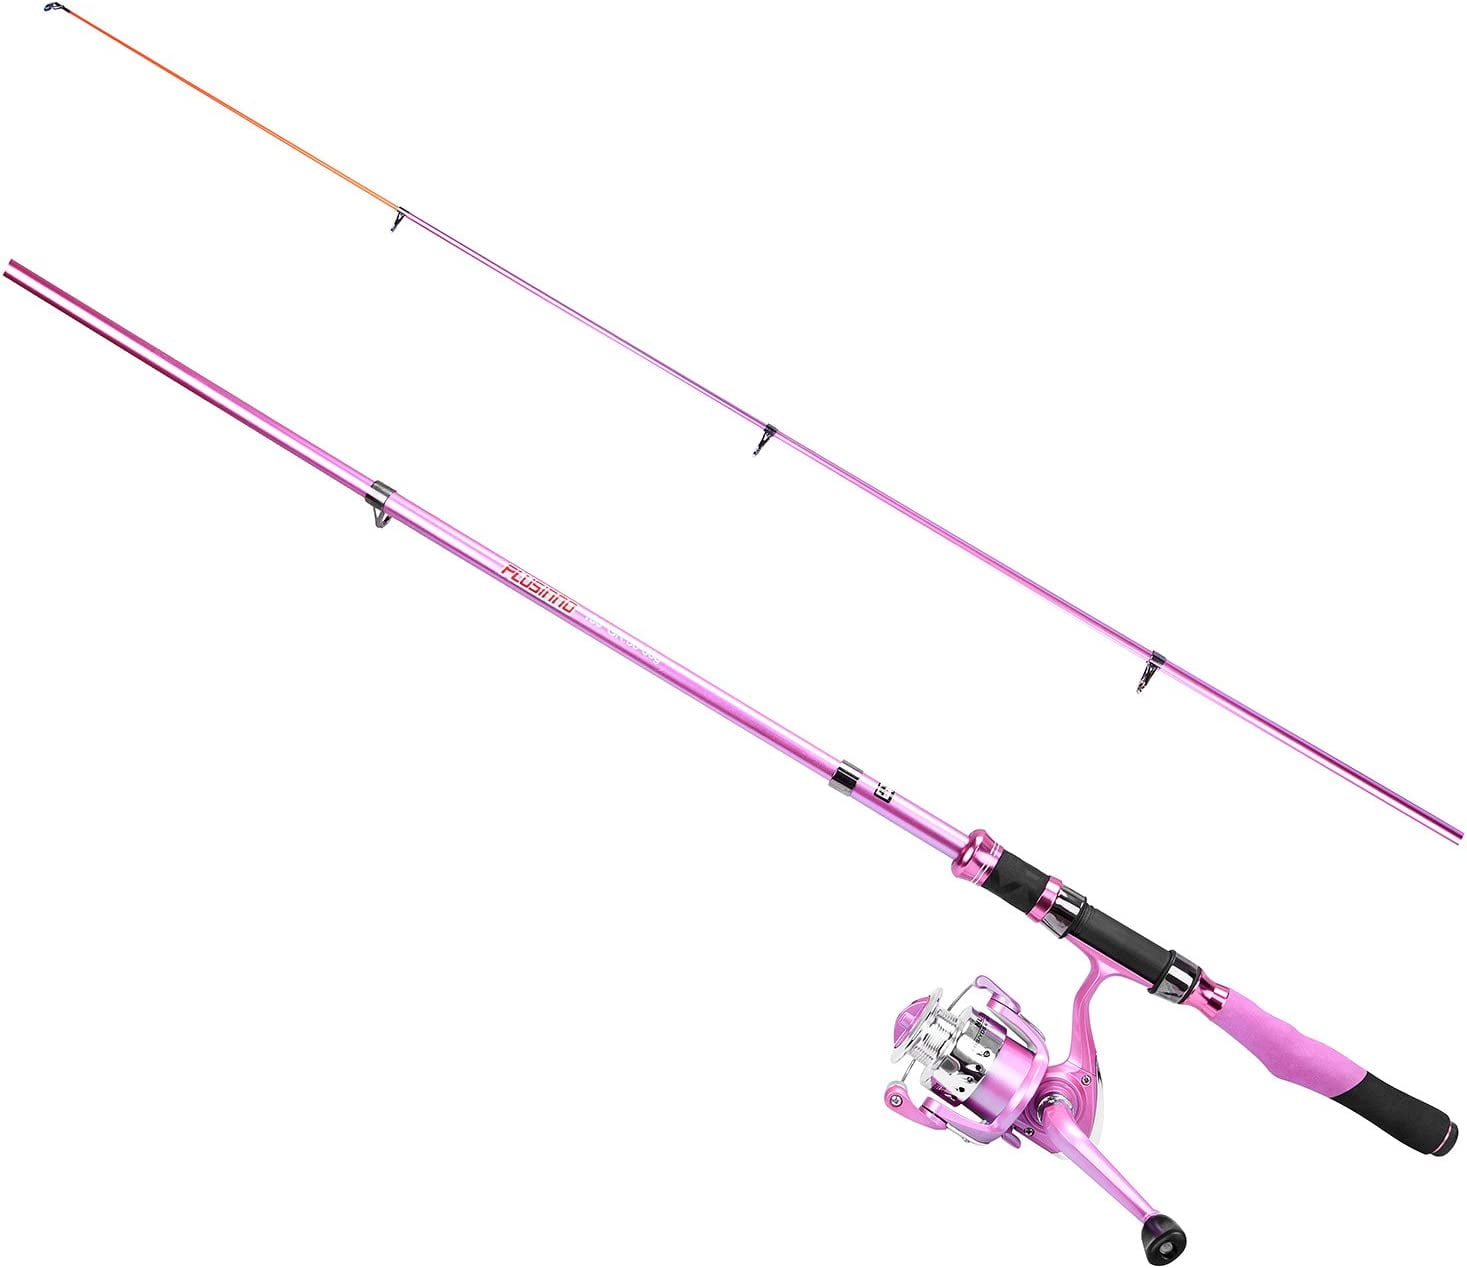  Cosych Pink Fishing Reel, Metal Waterproof